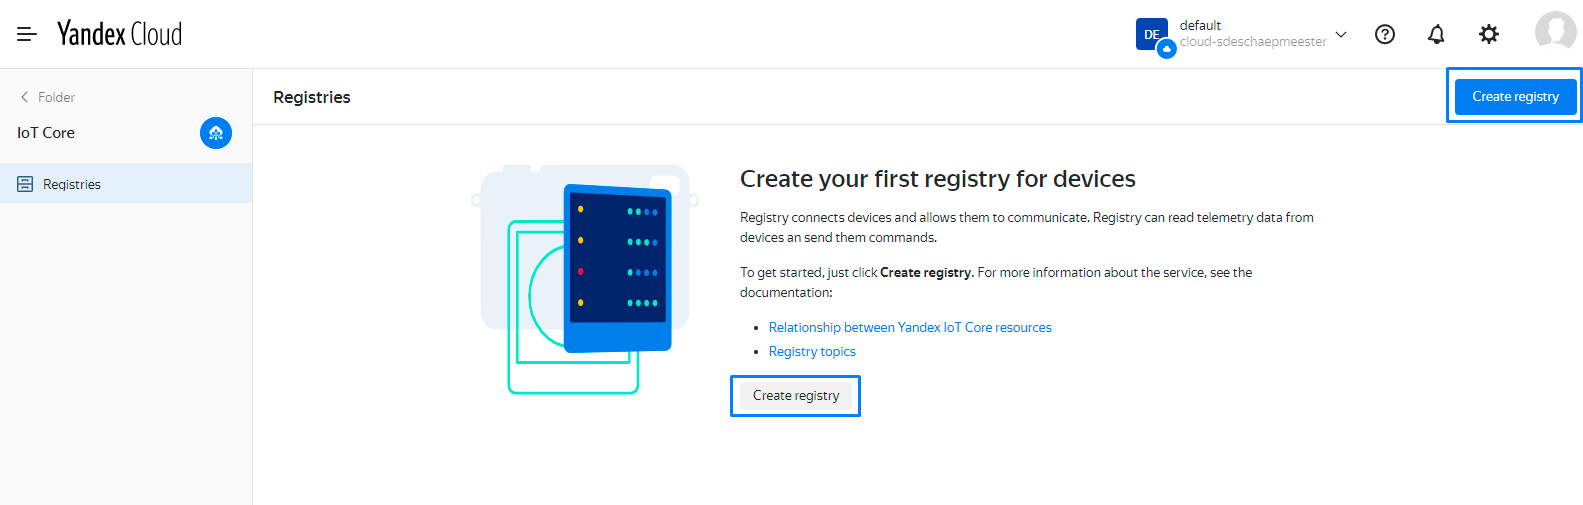 create_registry